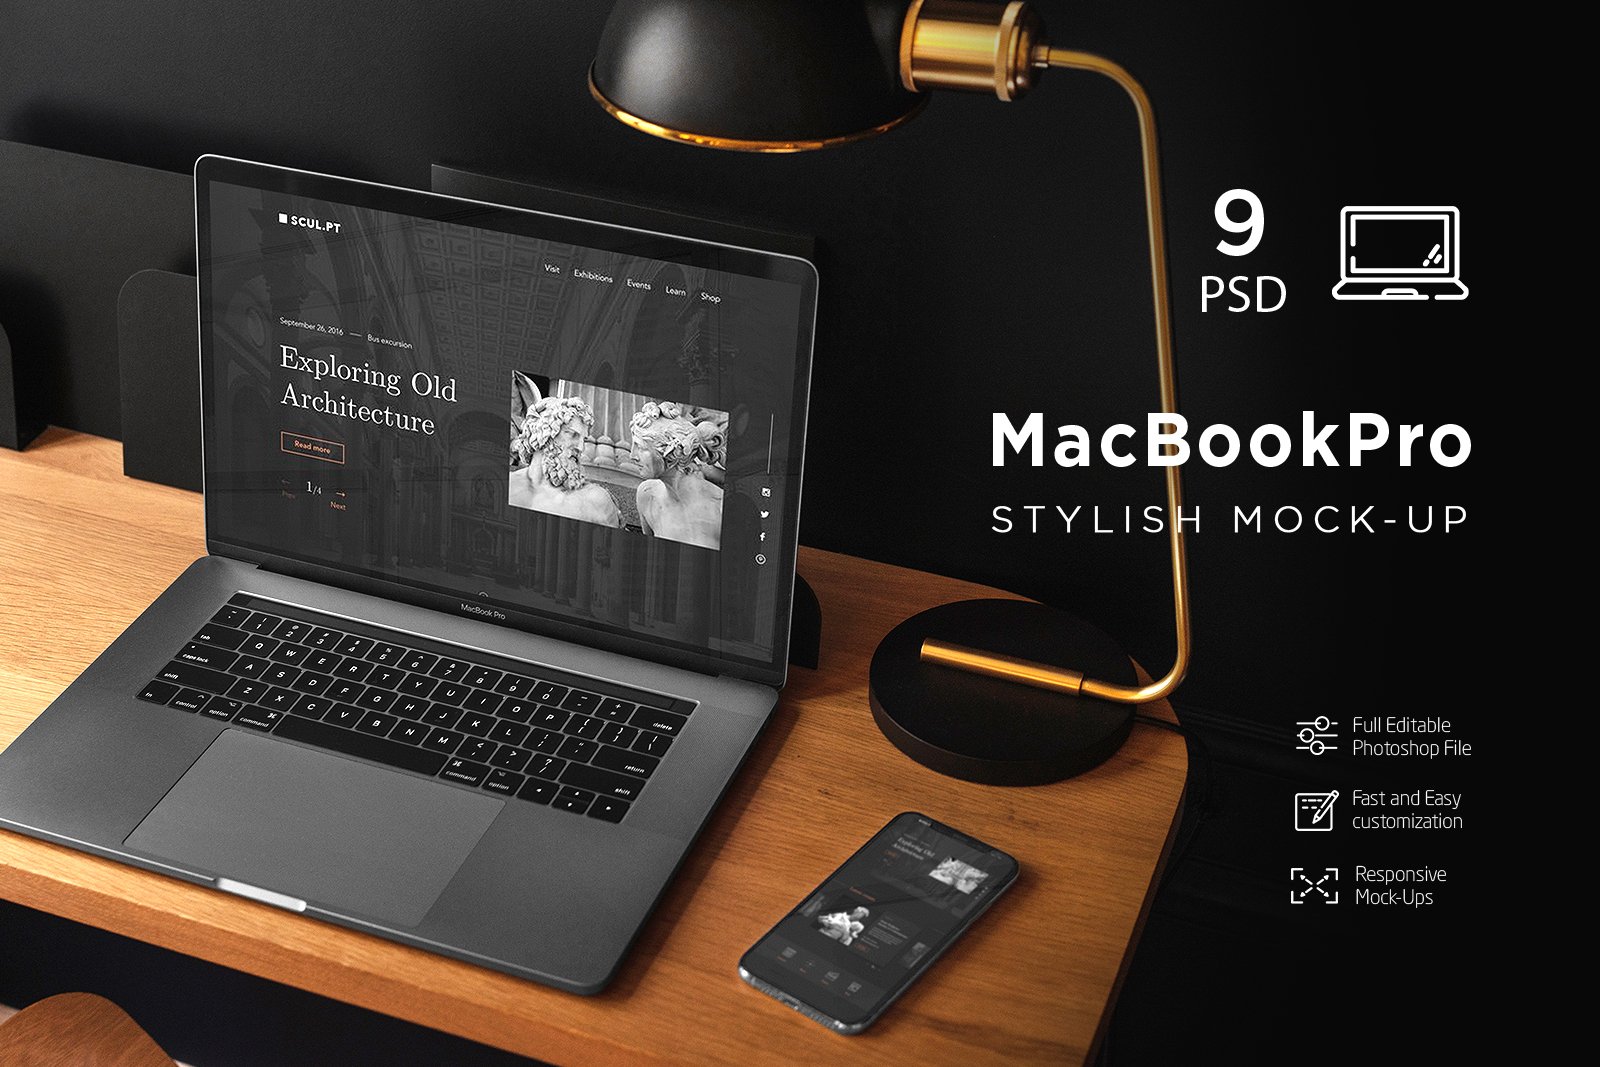 MacBook Pro Stylish MockUp cover image.